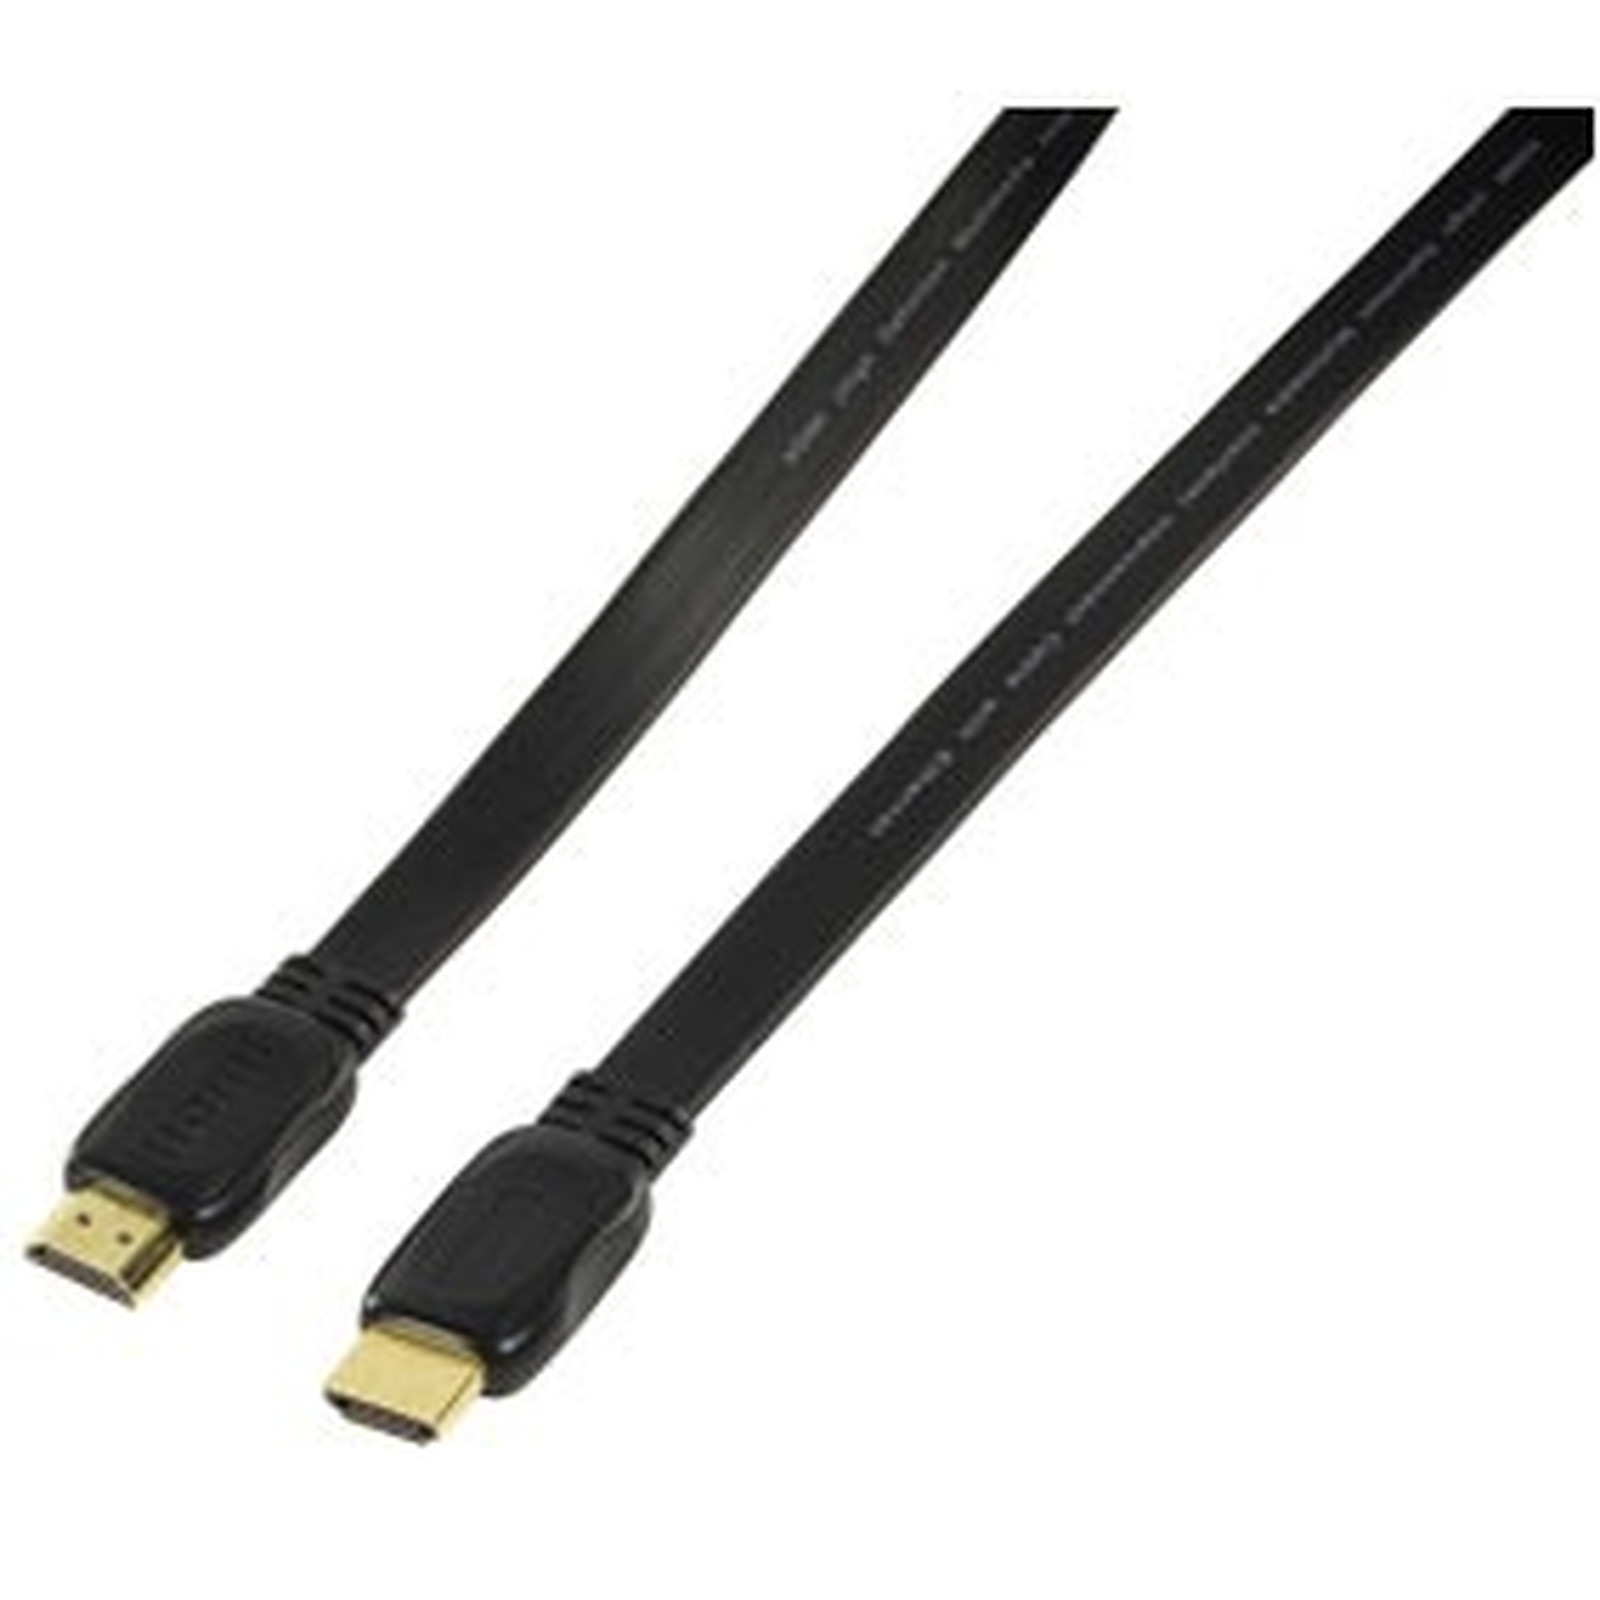 Cable HDMI 1.4 Ethernet Channel male/male (plat, plaque or) - (5 mètres) - HDMI Generique